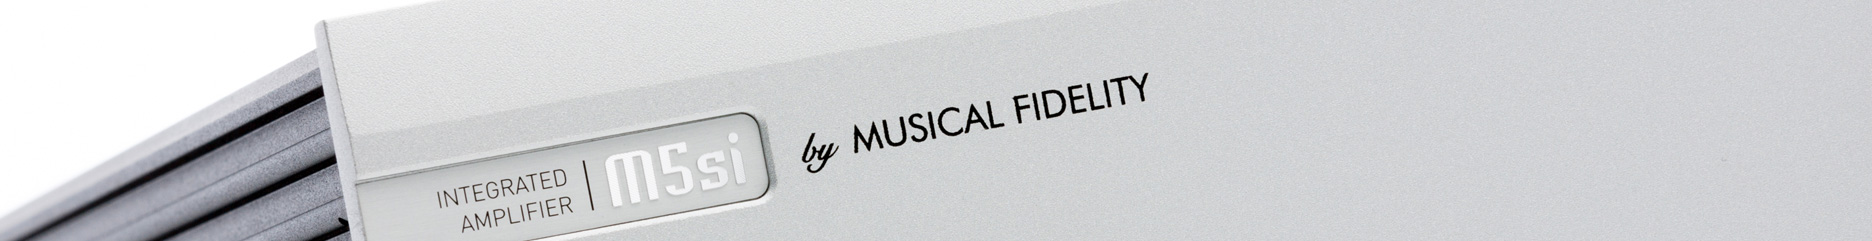 Logo marki Musical Fidelity